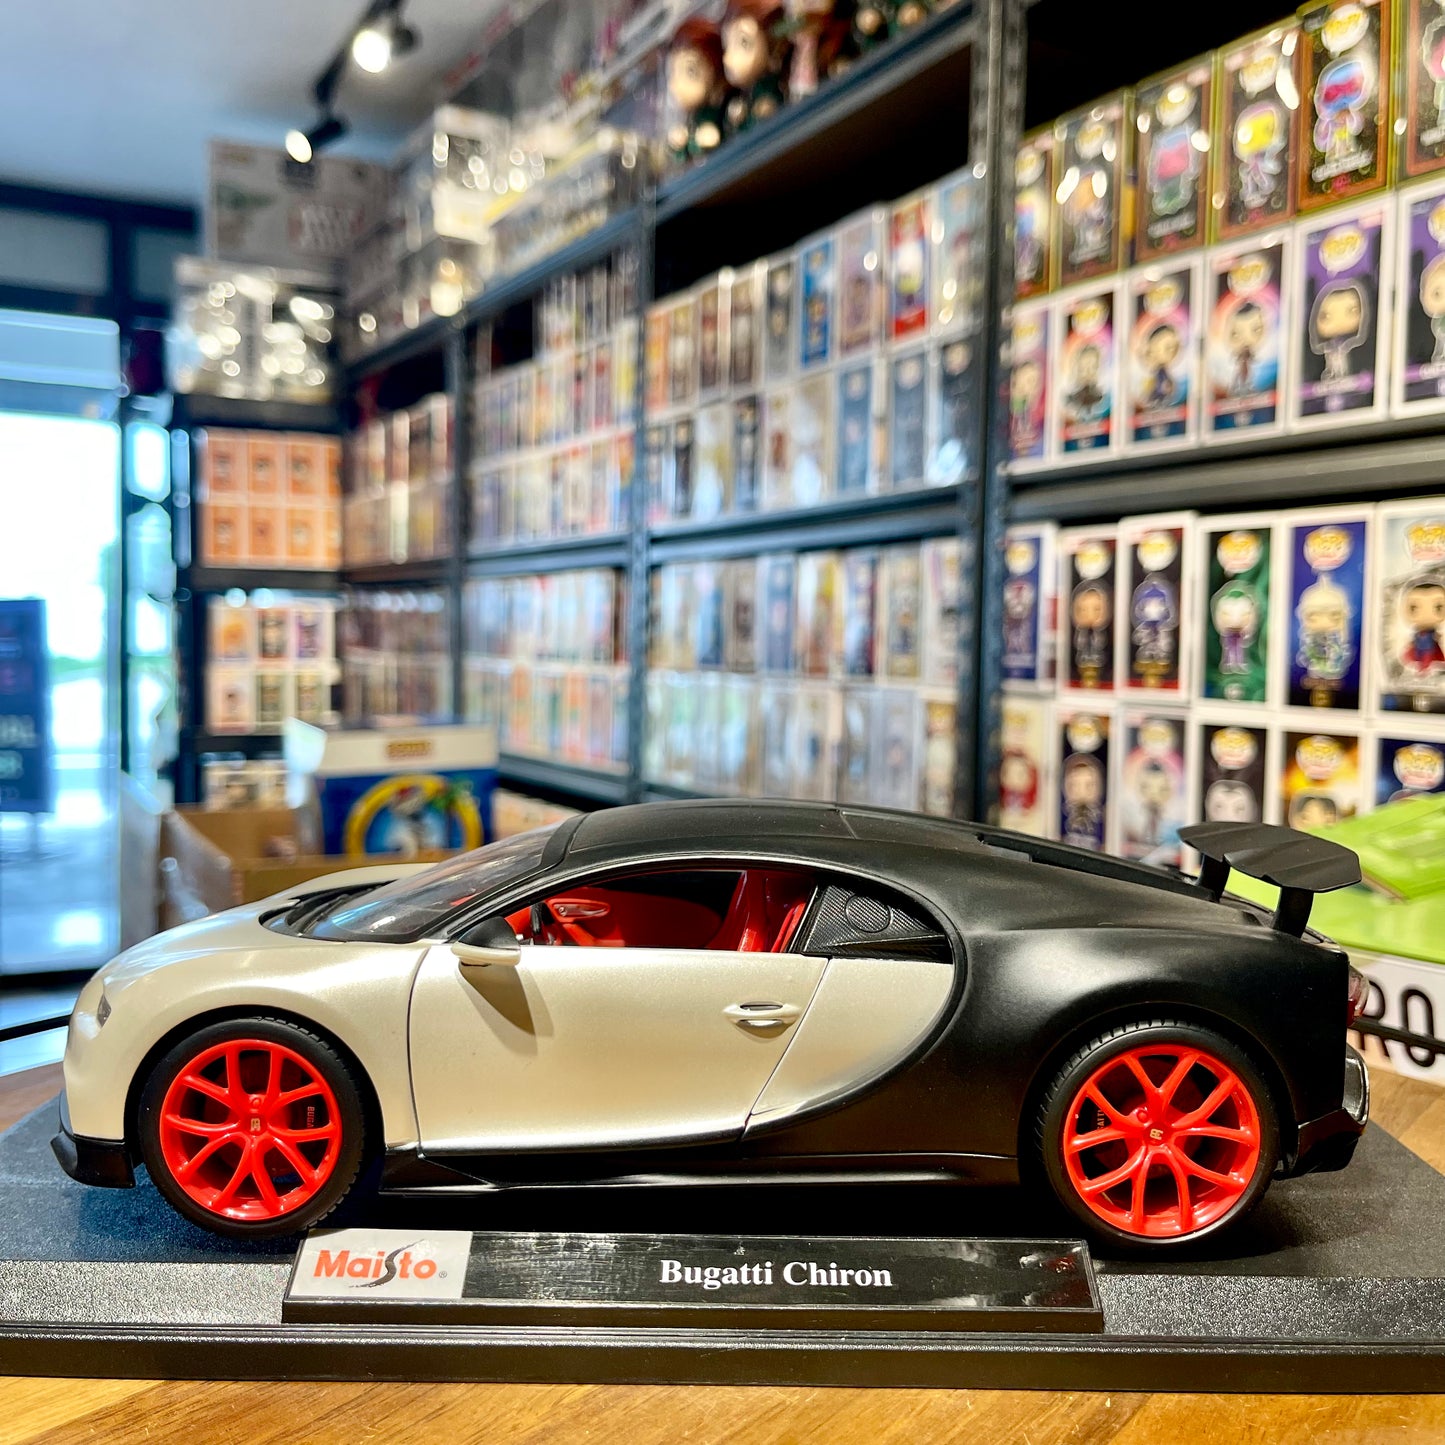 Maisto: Bugatti Chiron 1:18 scale